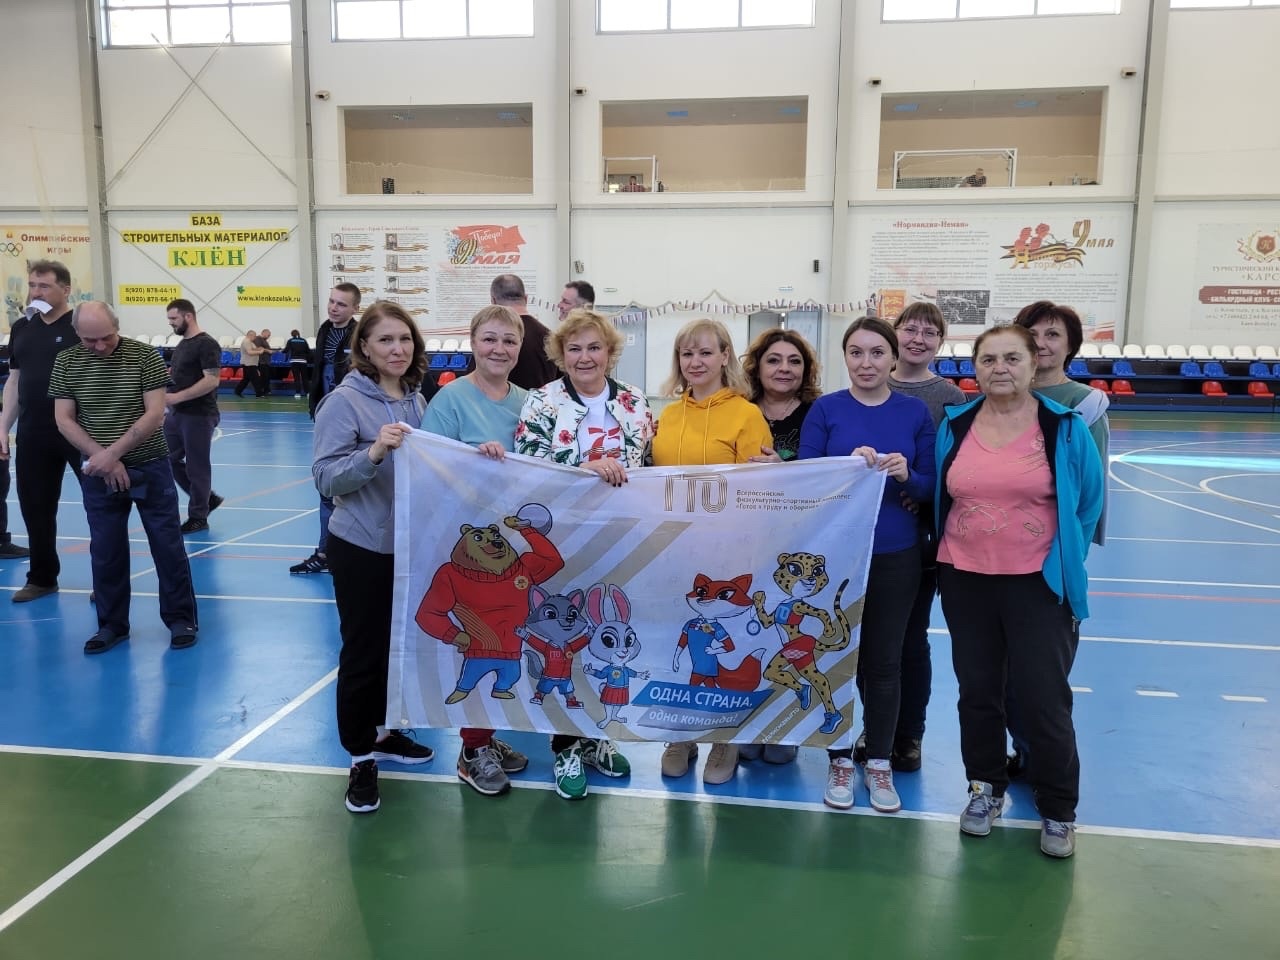 Физкультурно-спортивный праздник ГТО для сотрудников РЭС.